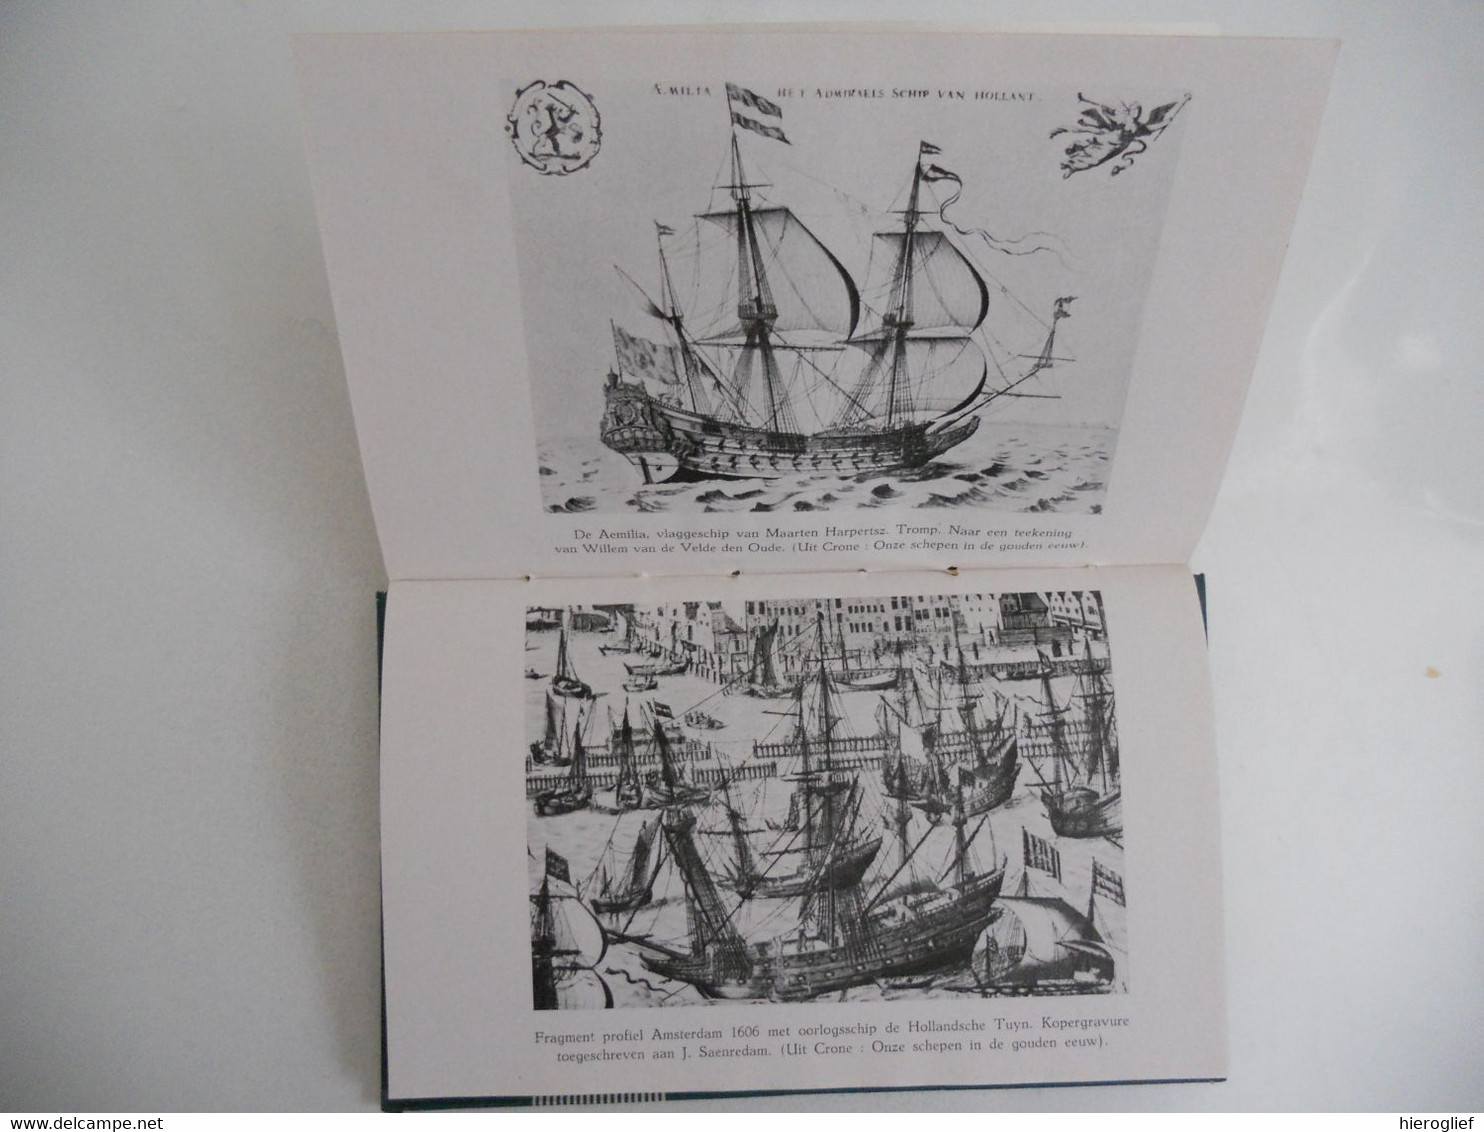 GESCHIEDENIS VAN HET SCHIP door Paul De Vree met illustraties de seizoenen 28 boot zeevaart scheepsbouw varen